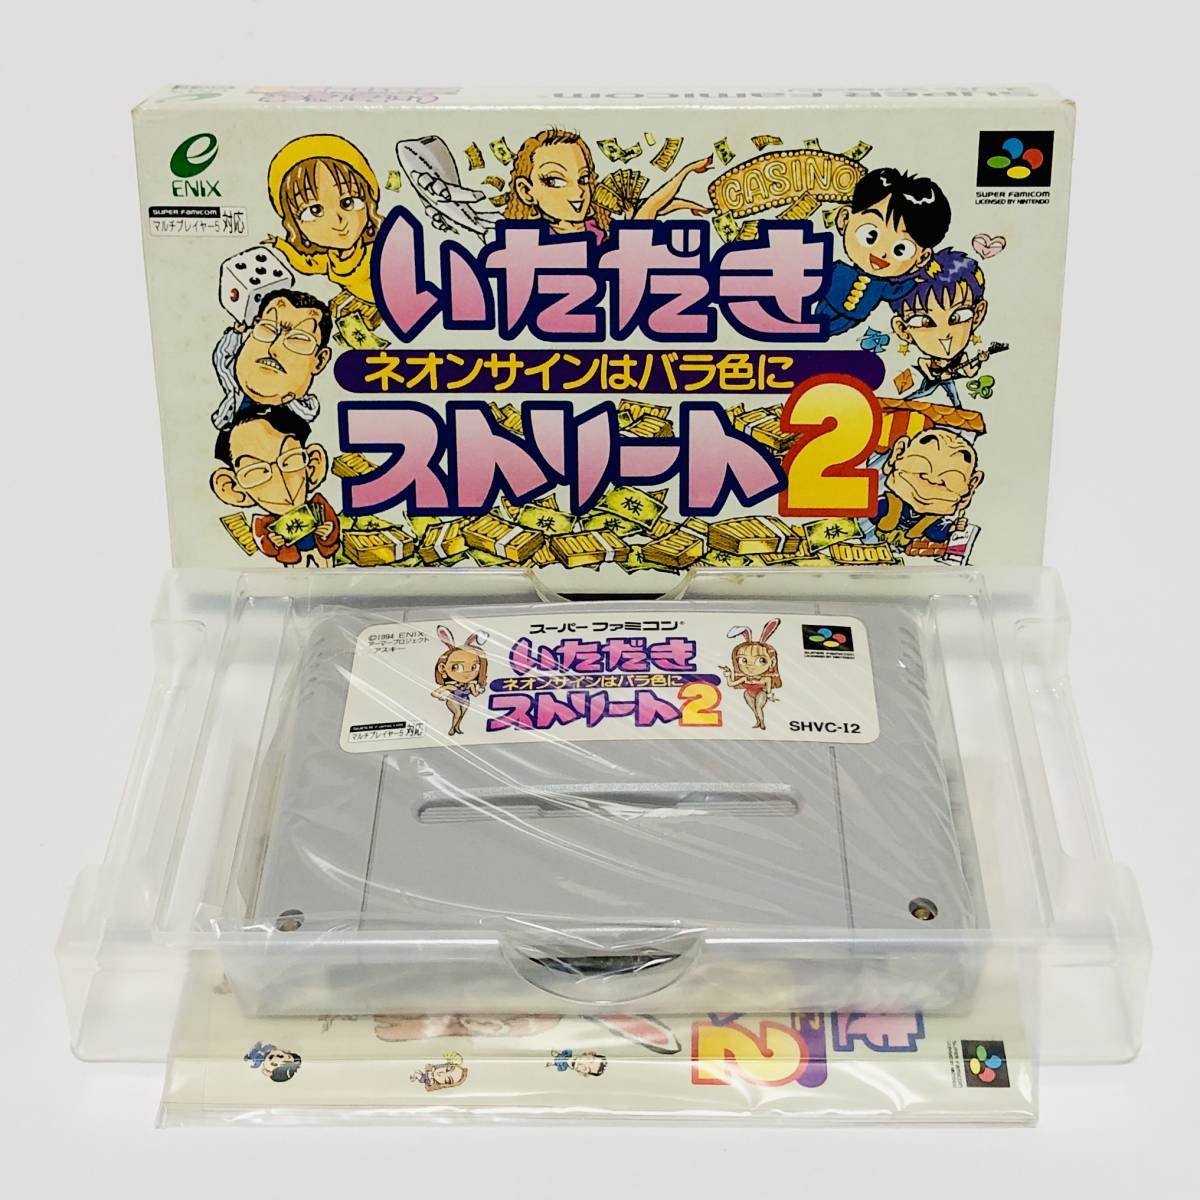 スーパーファミコン いただきストリート2 ネオンサインはバラ色に 箱説付き エニックス Nintendo Super Famicom Itadaki Street CIB Enix_画像1